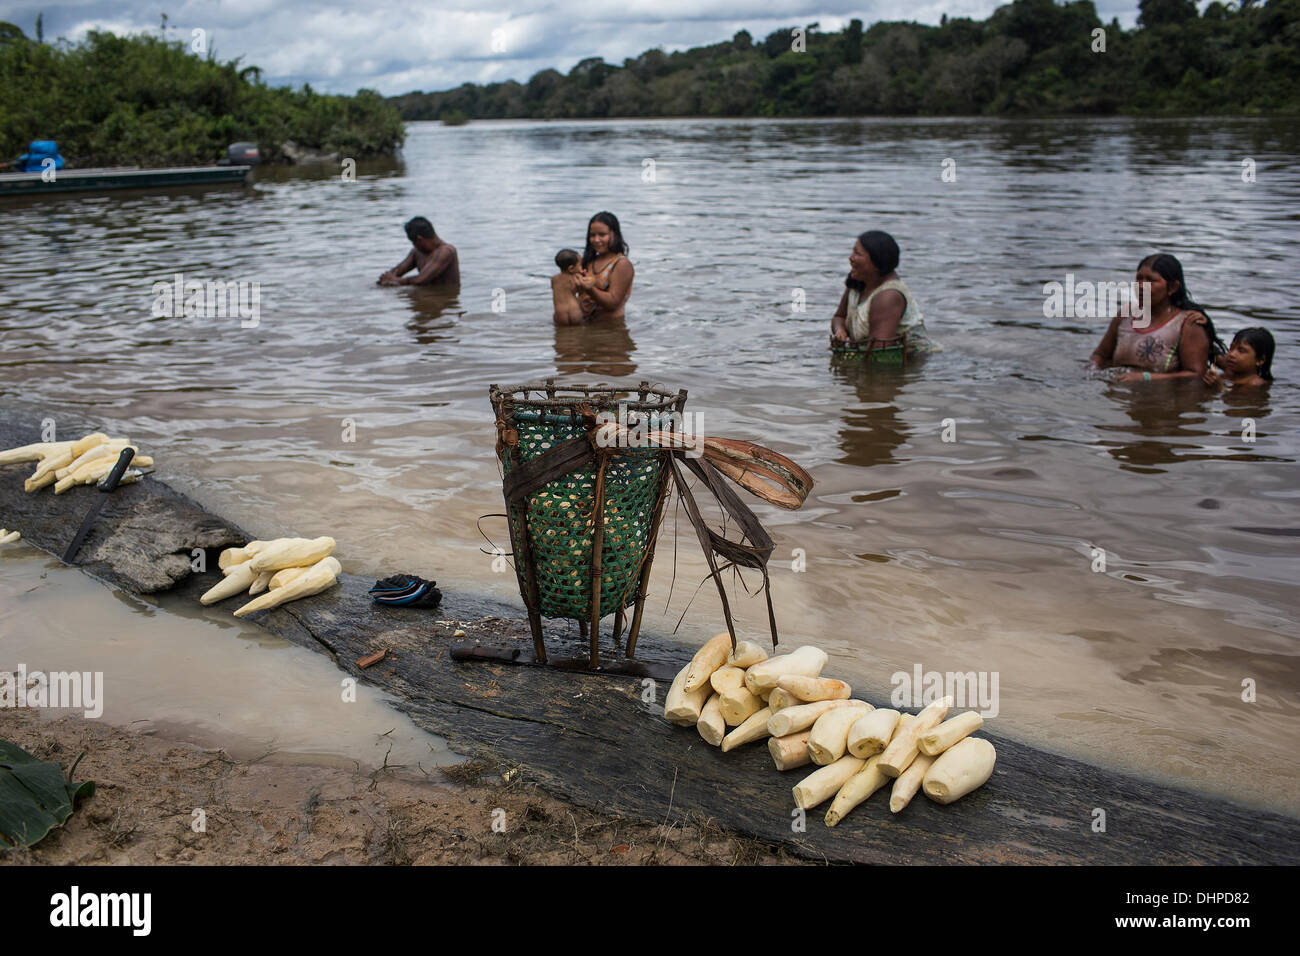 9 mai 2013 - Poti-Kro, Para, Brésil - Une grande partie de l'activité quotidienne se passe au bord du fleuve. Ici, les femmes combinent Xikrin récoltés avec le bain de lavage du yucca. Les Xikrin personnes vivent sur l'Bacaja, un affluent de la rivière Xingu, où la construction du barrage de Belo Monte est à la pointe de la construction. Certains scientifiques affirment que le niveau d'eau du Bacaja diminue rapidement en raison du barrage. (Crédit Image : © Taylor Weidman/ZUMA/ZUMAPRESS.com) fil Banque D'Images